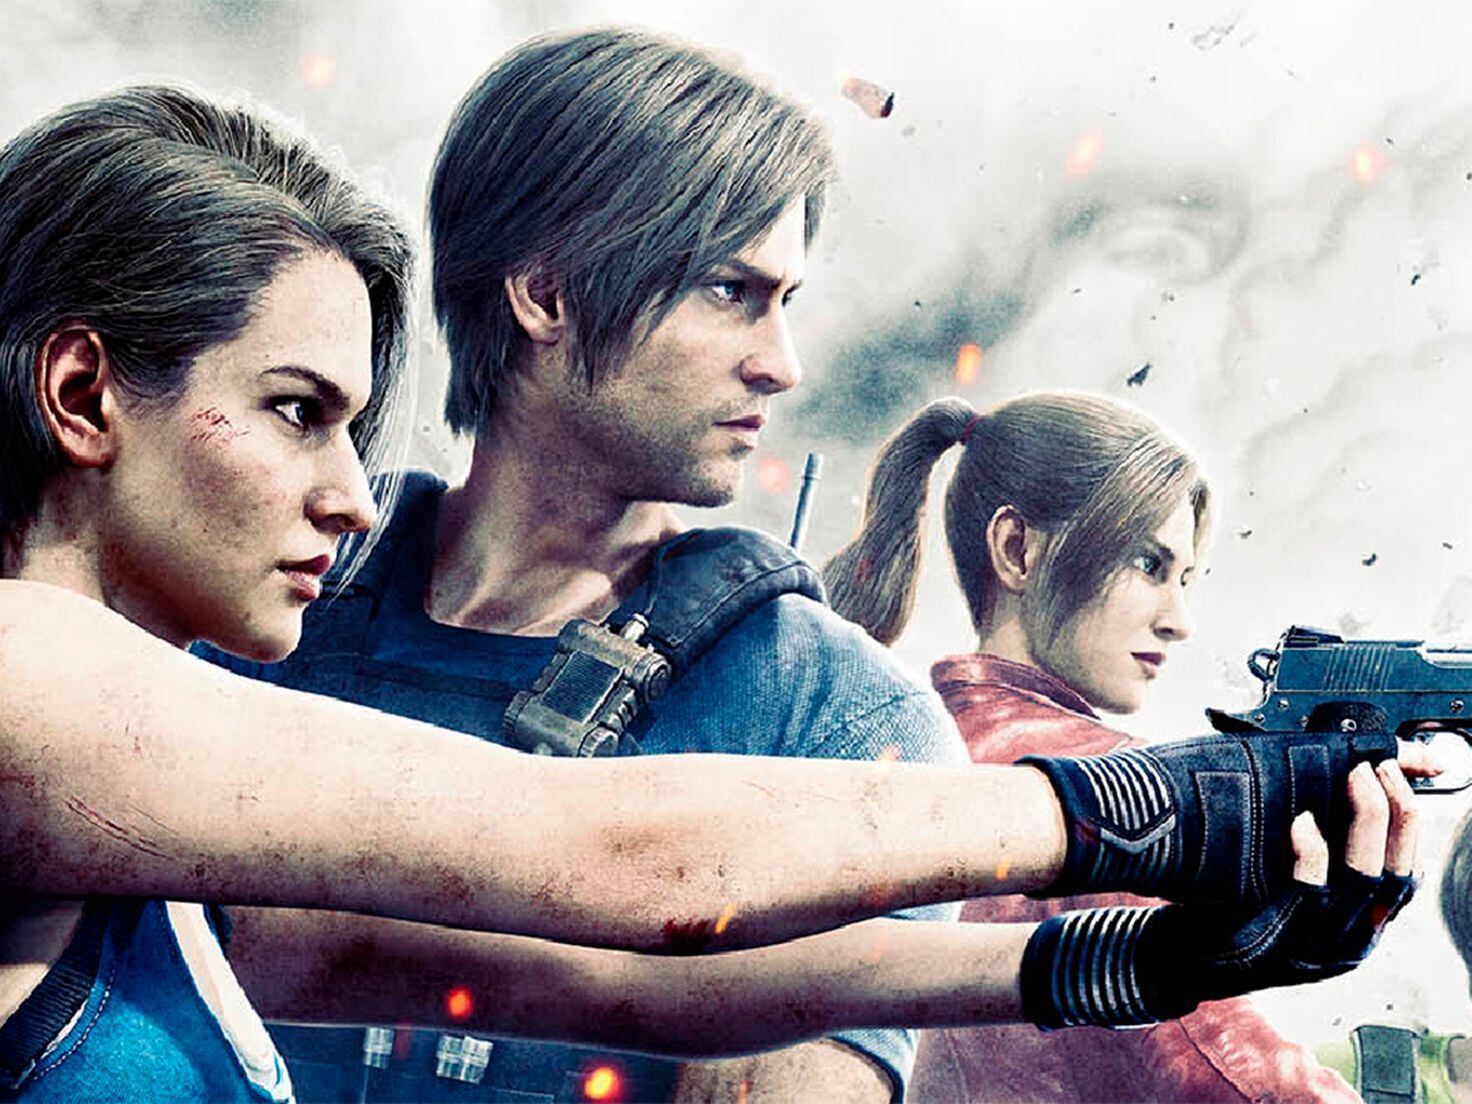 Las mejores ofertas en Resident Evil 4 Sony Playstation 4 juegos de video